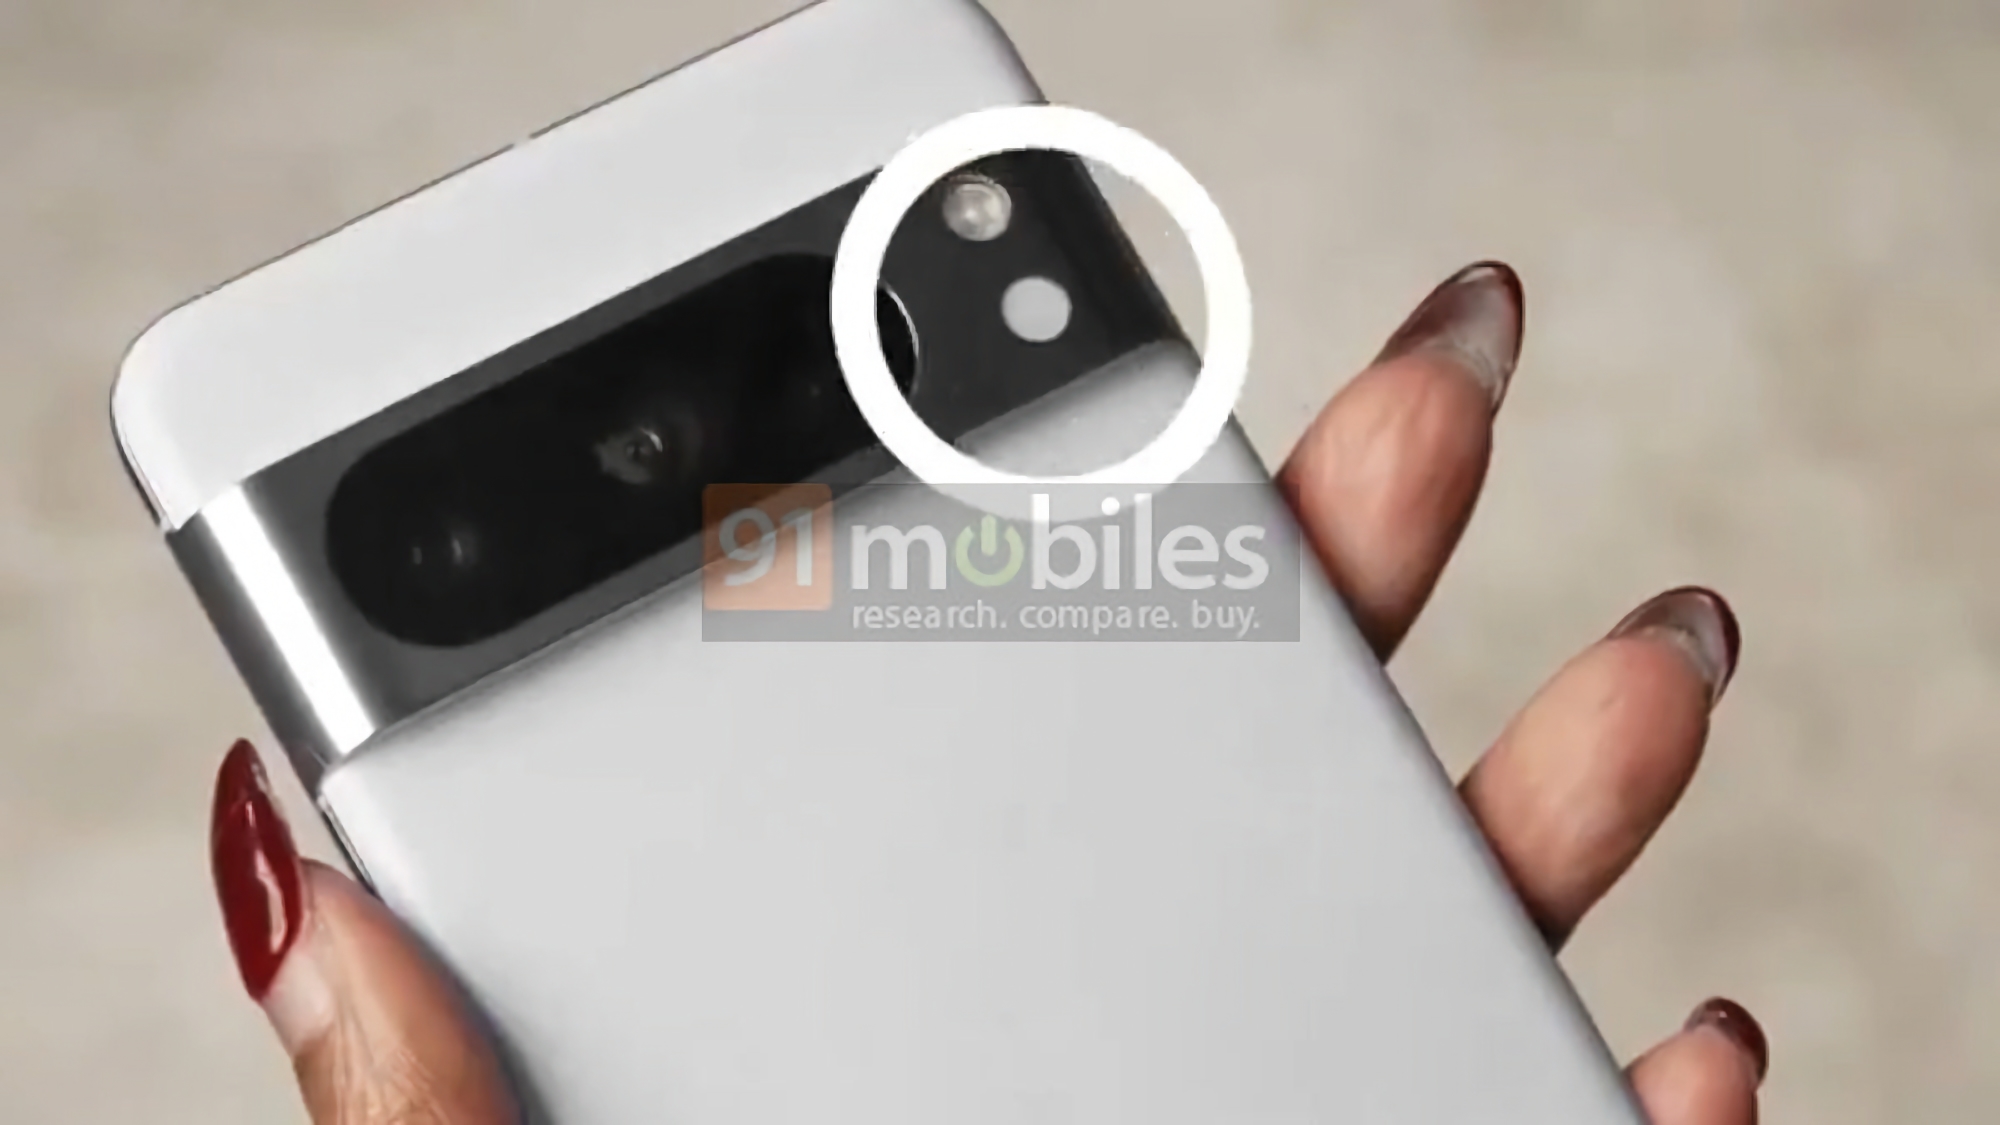 La publicité Pixel 8 Pro de Google fait le tour d'internet : le smartphone sera doté d'un capteur de température corporelle.